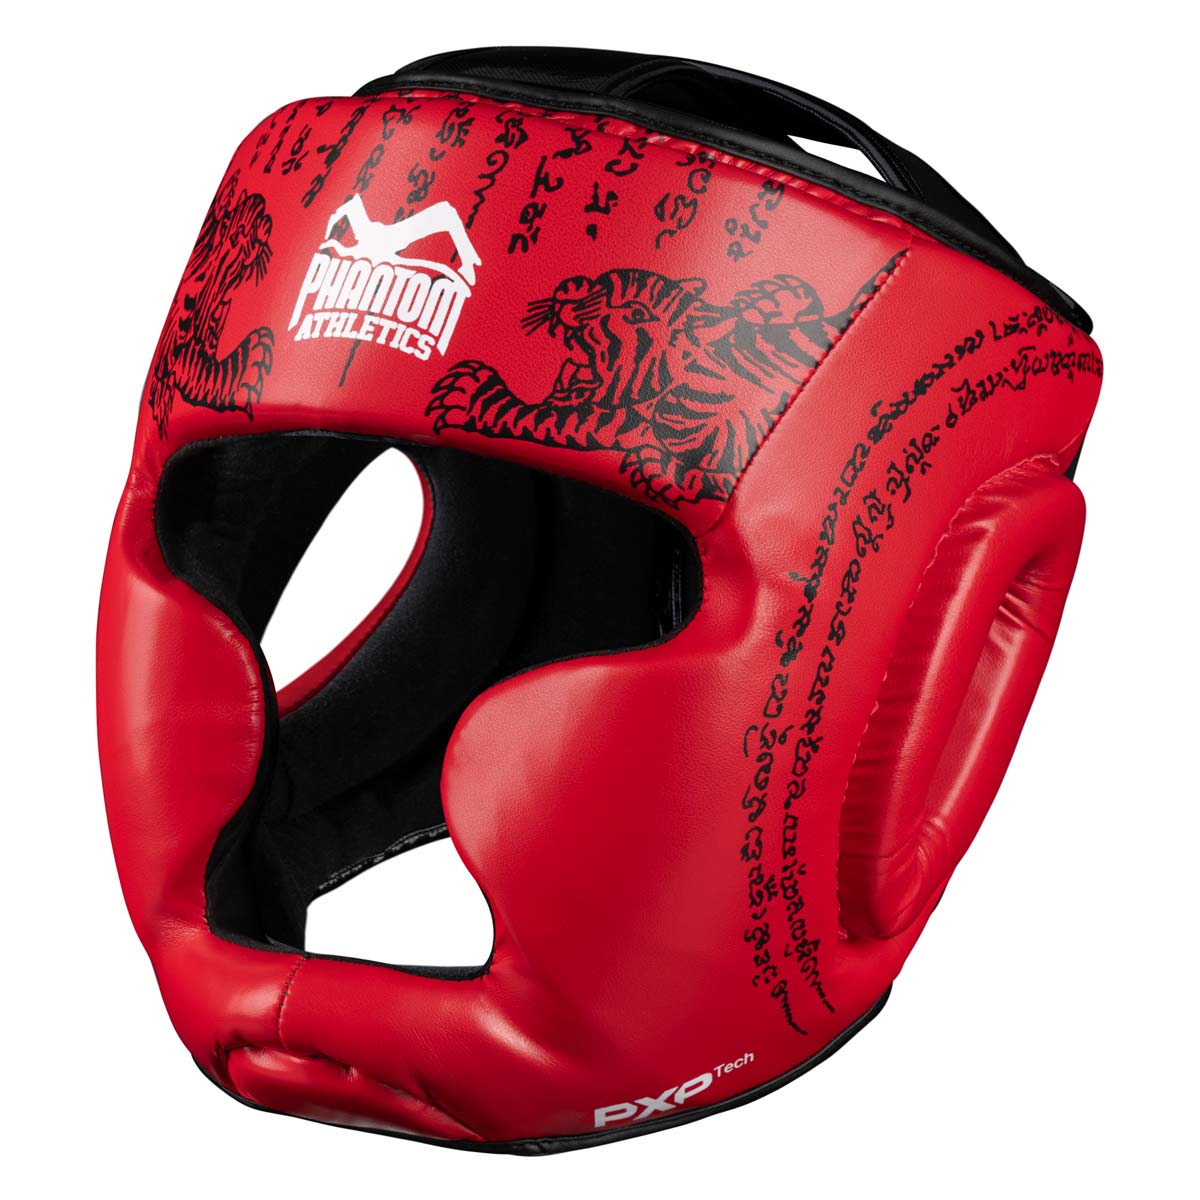 Protección de cabeza Phantom Muay Thai para combate, competición y entrenamiento de boxeo tailandés y MMA. Con el diseño tradicional de Sak Yant y el color rojo.